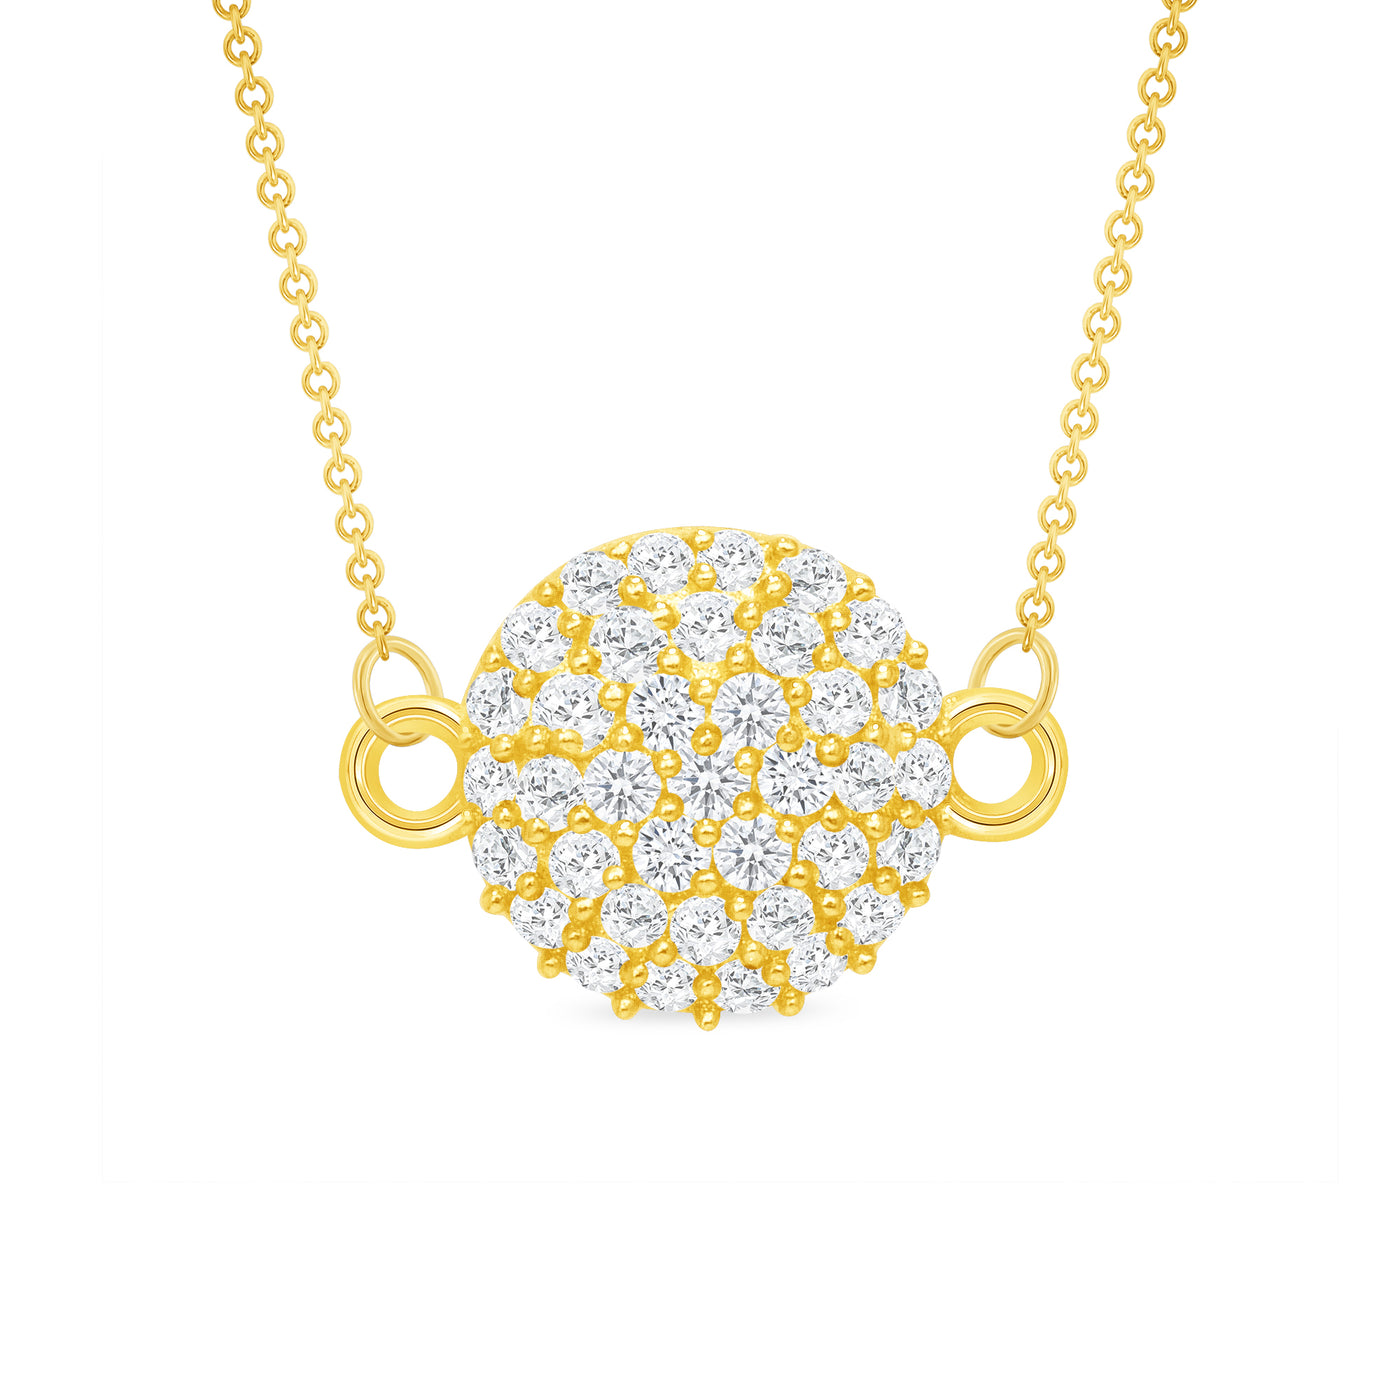 14K Gold 0.30 Carat Diamond Disc Bracelet or Necklace Pendant (7" & 17" Rolo Chain)